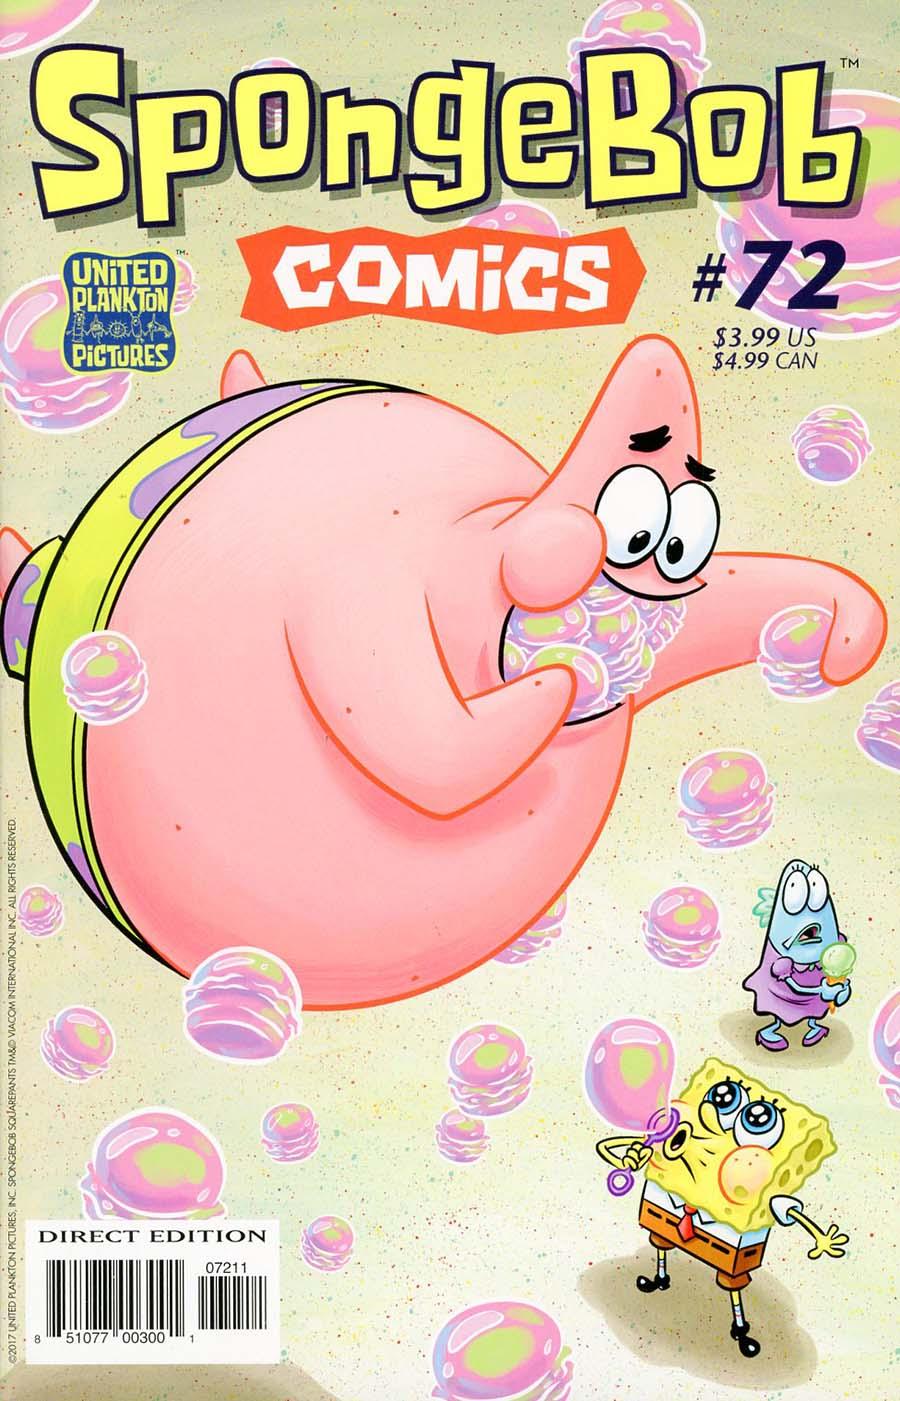 SpongeBob Comics Vol. 1 #72